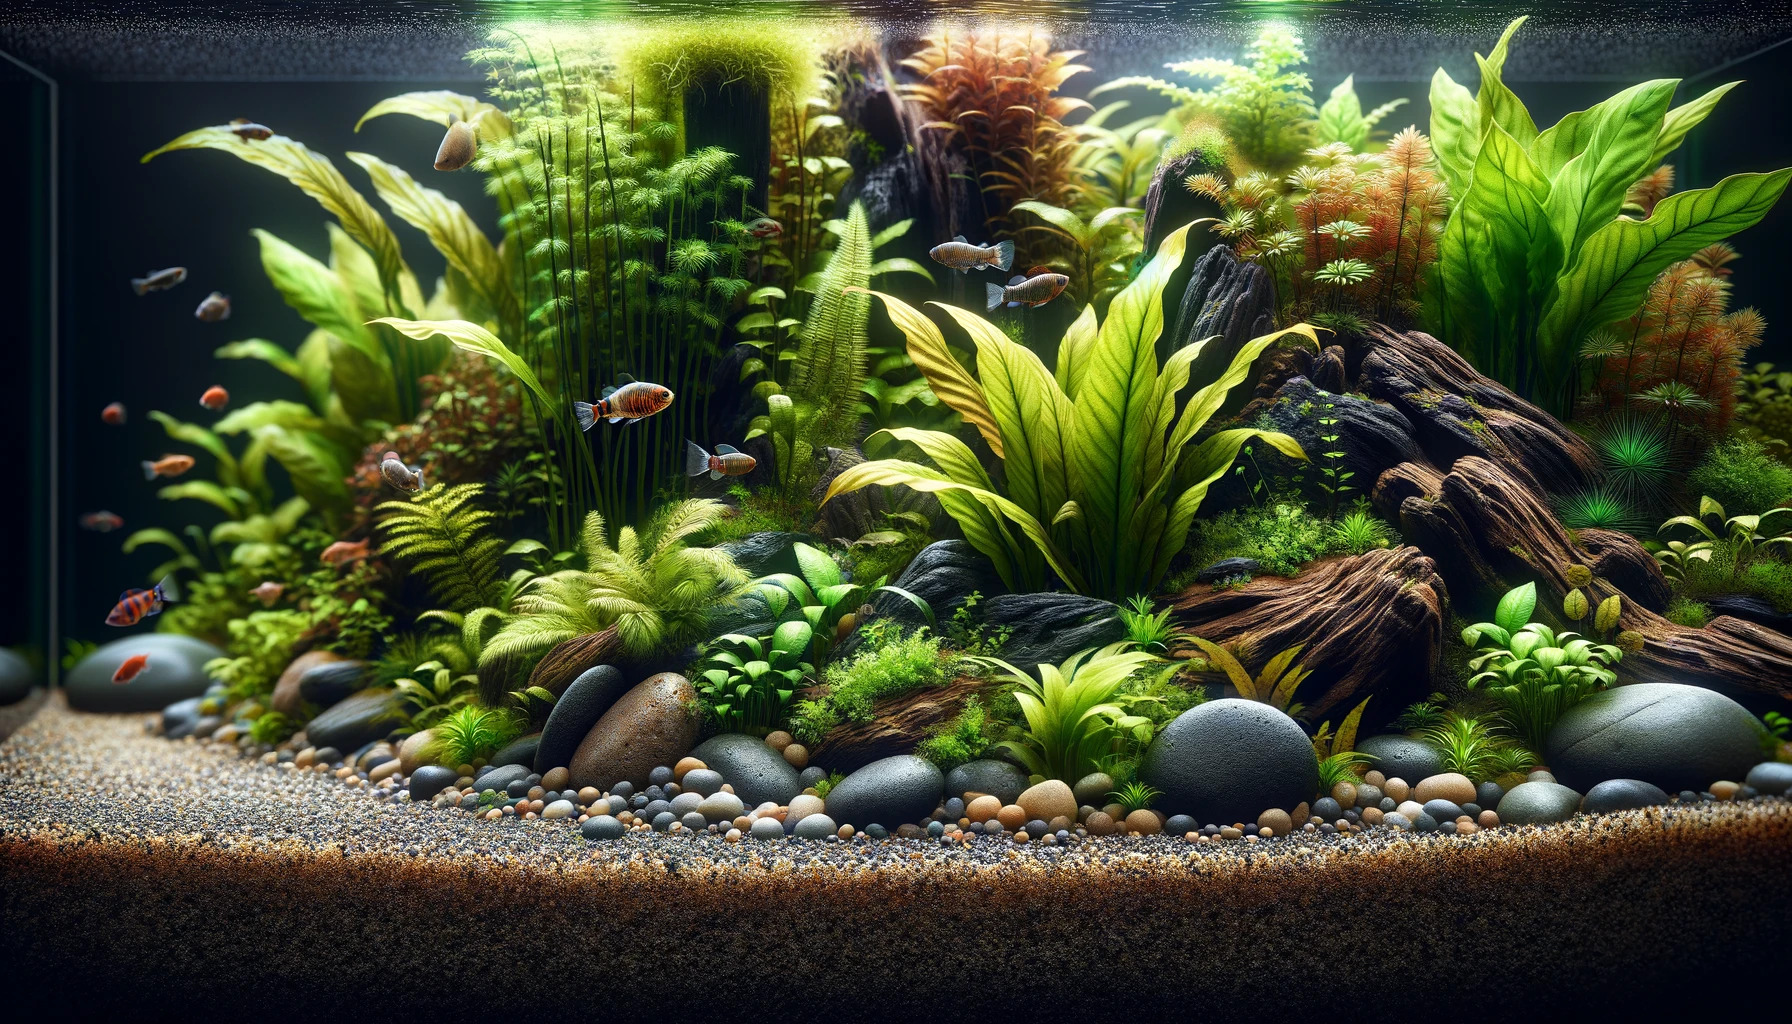 Ausschnitt eines Aquariums mit Pflanzen, Steinen und Wurzeln